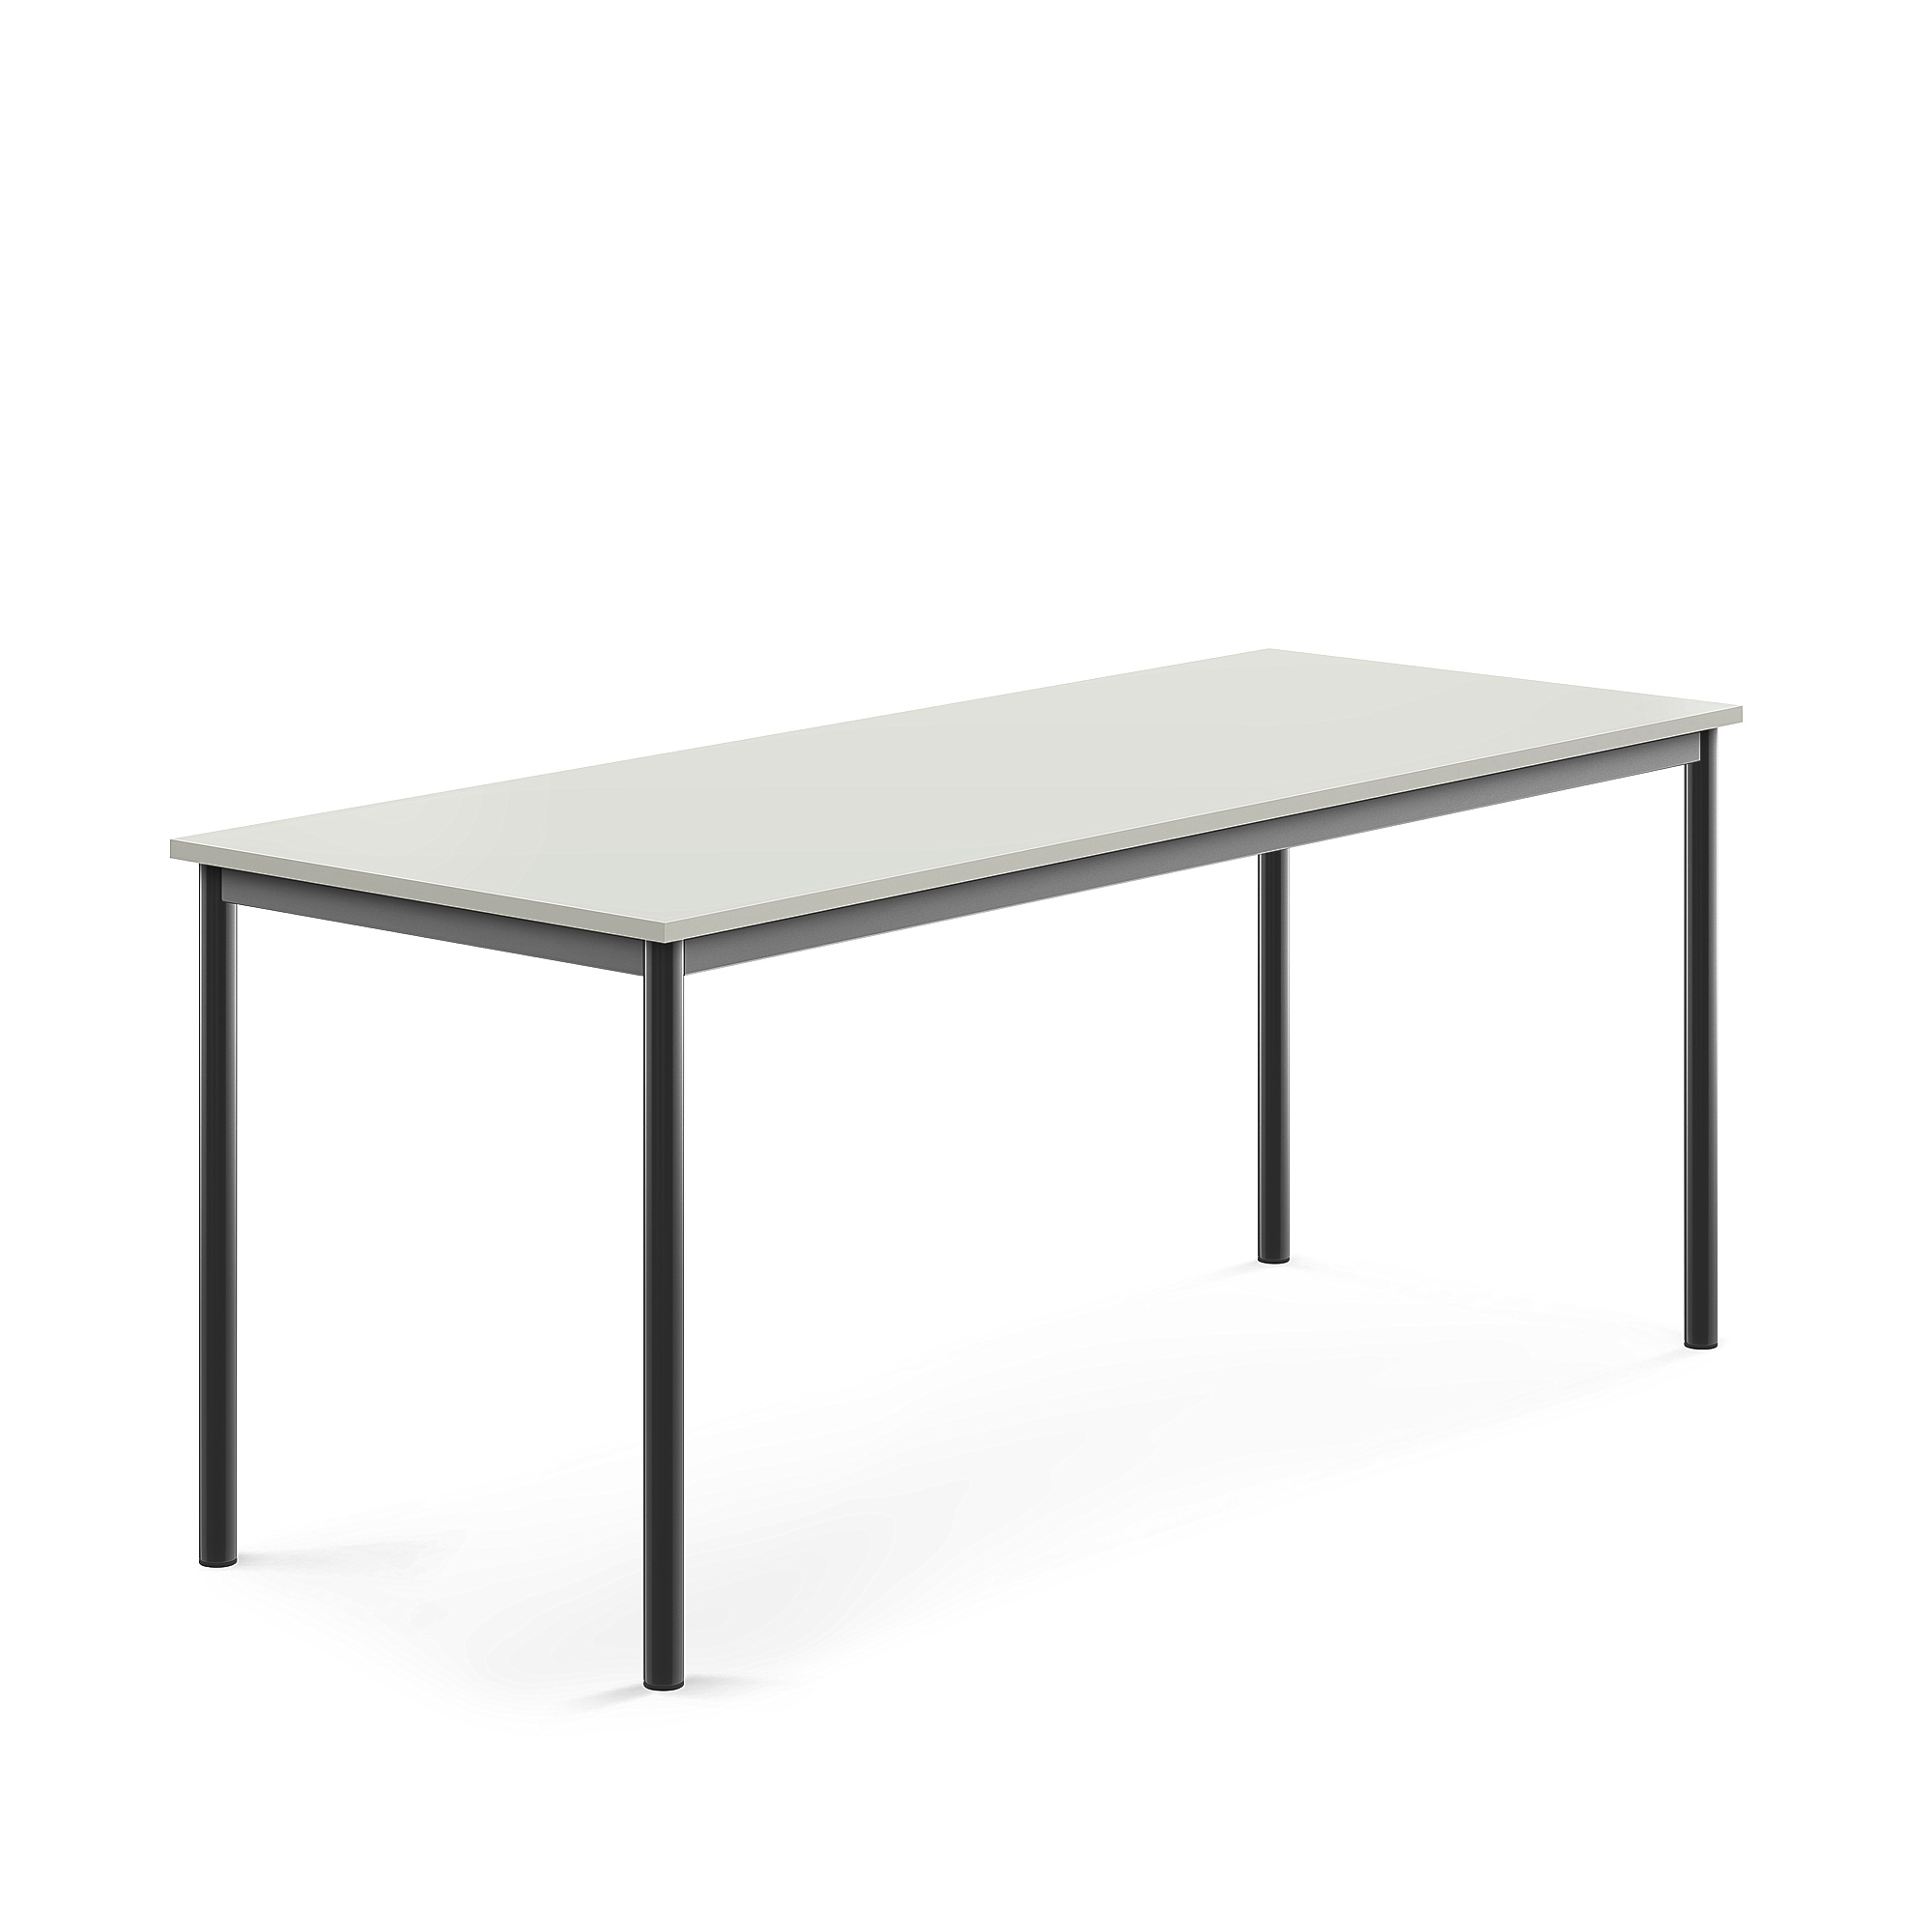 Stůl BORÅS, 1800x700x720 mm, antracitově šedé nohy, HPL deska, šedá